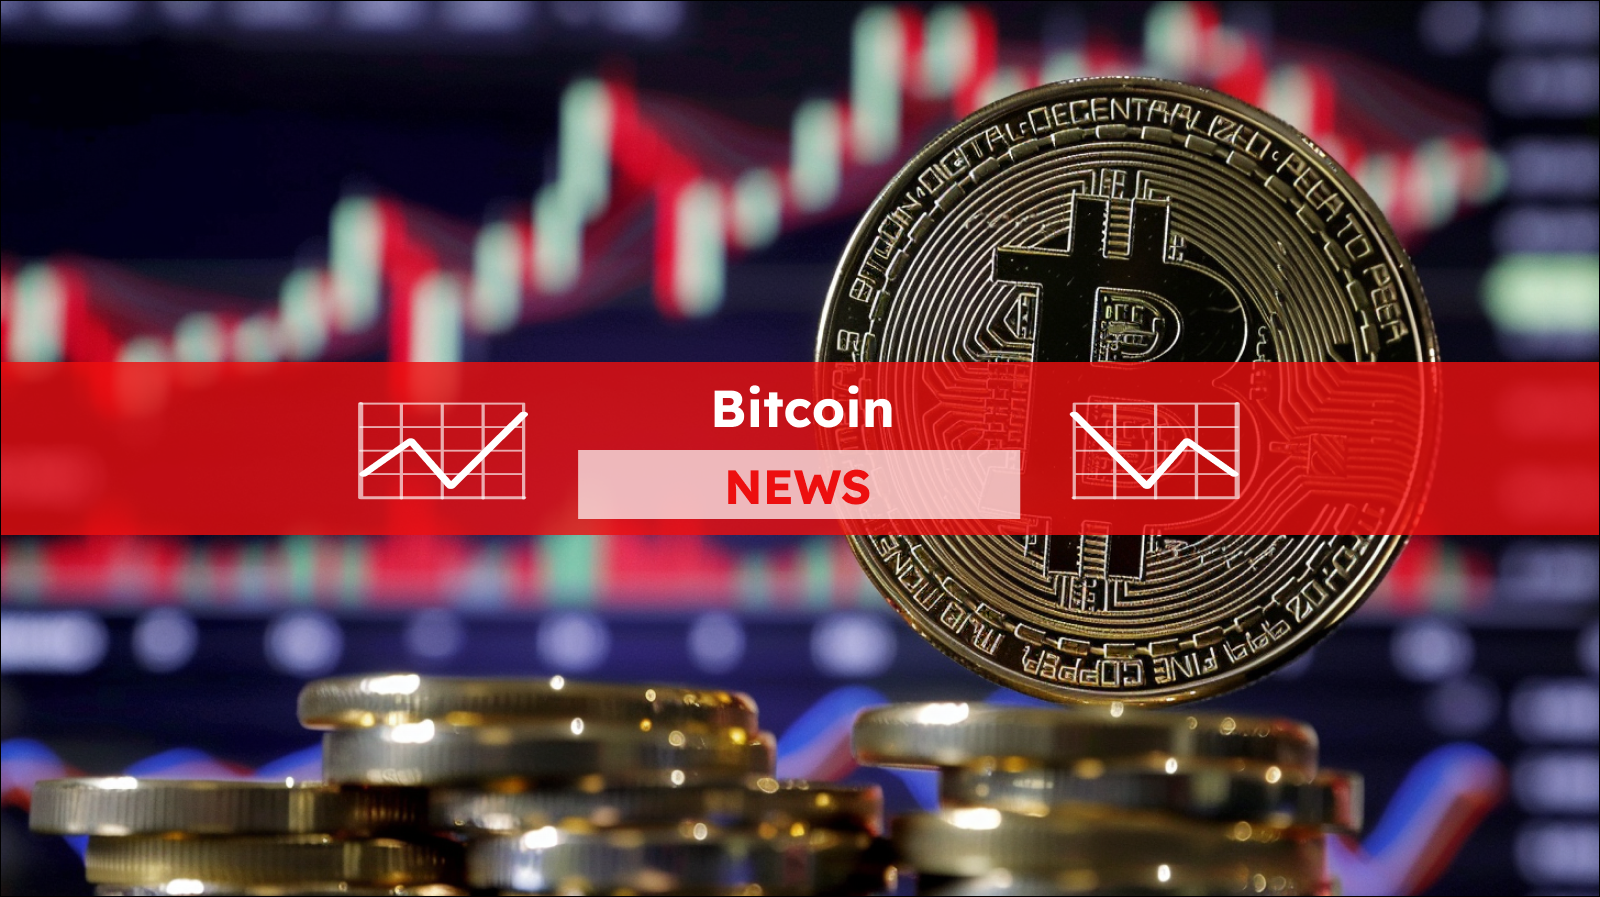 Bitcoin, Aktiendiagramm im Hintergrund,  mit einem Bitcoin NEWS Banner